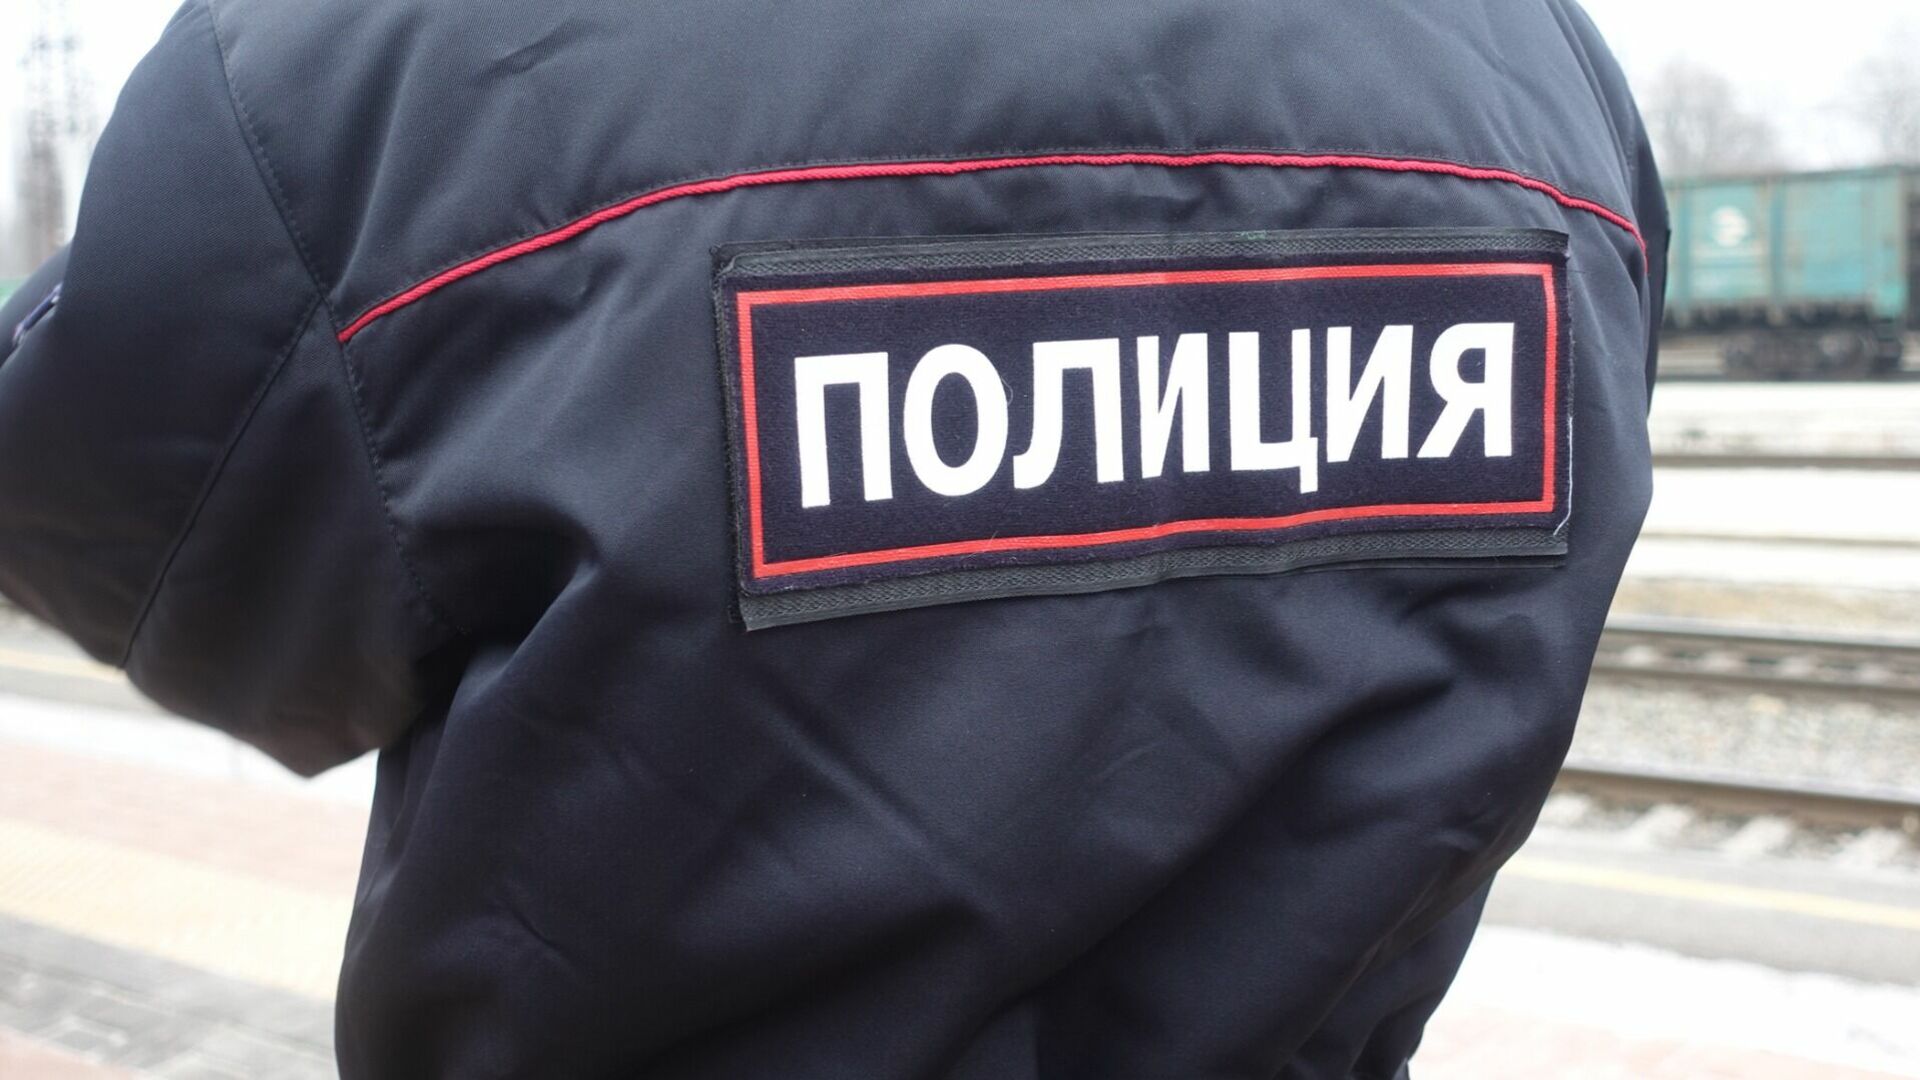 Двух сотрудников полиции задержали за сбыт наркотиков в Нижнем Новгороде